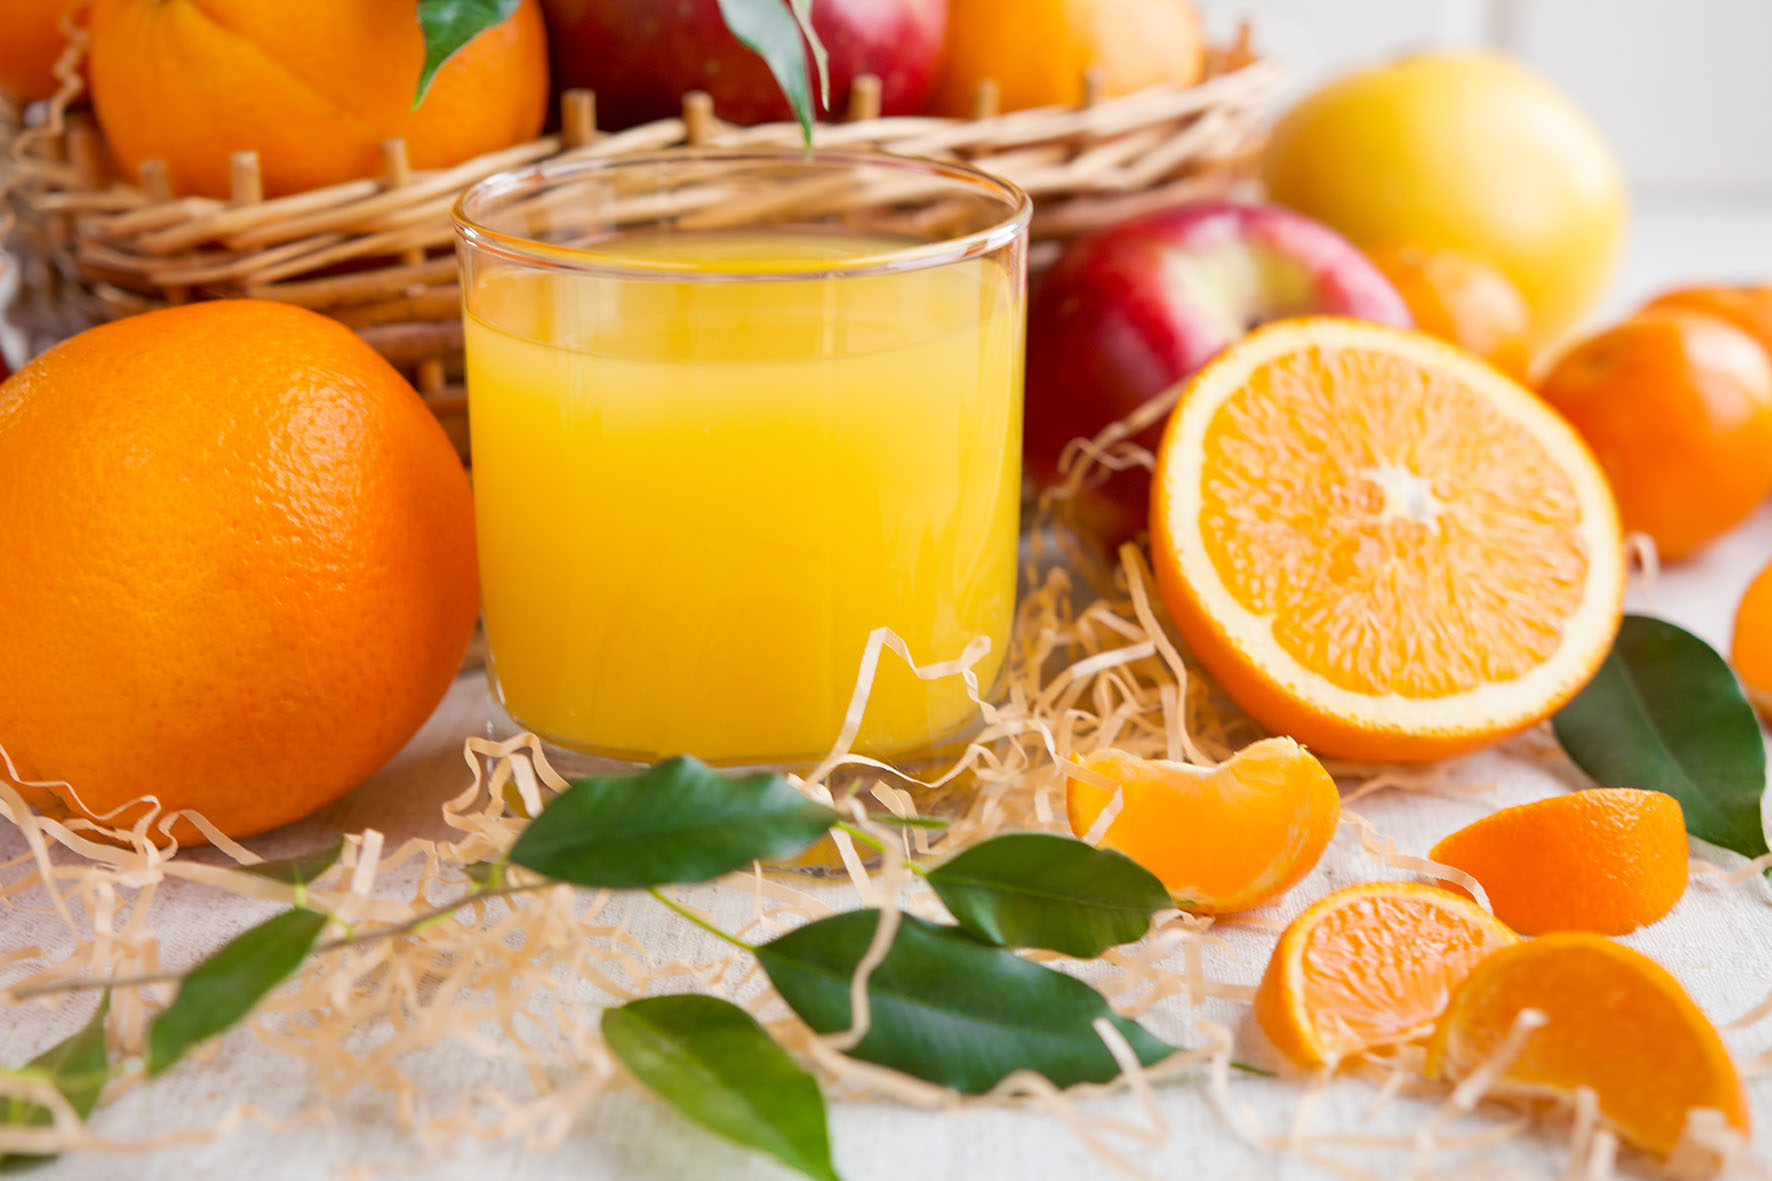 Vaso con zumo de naranja